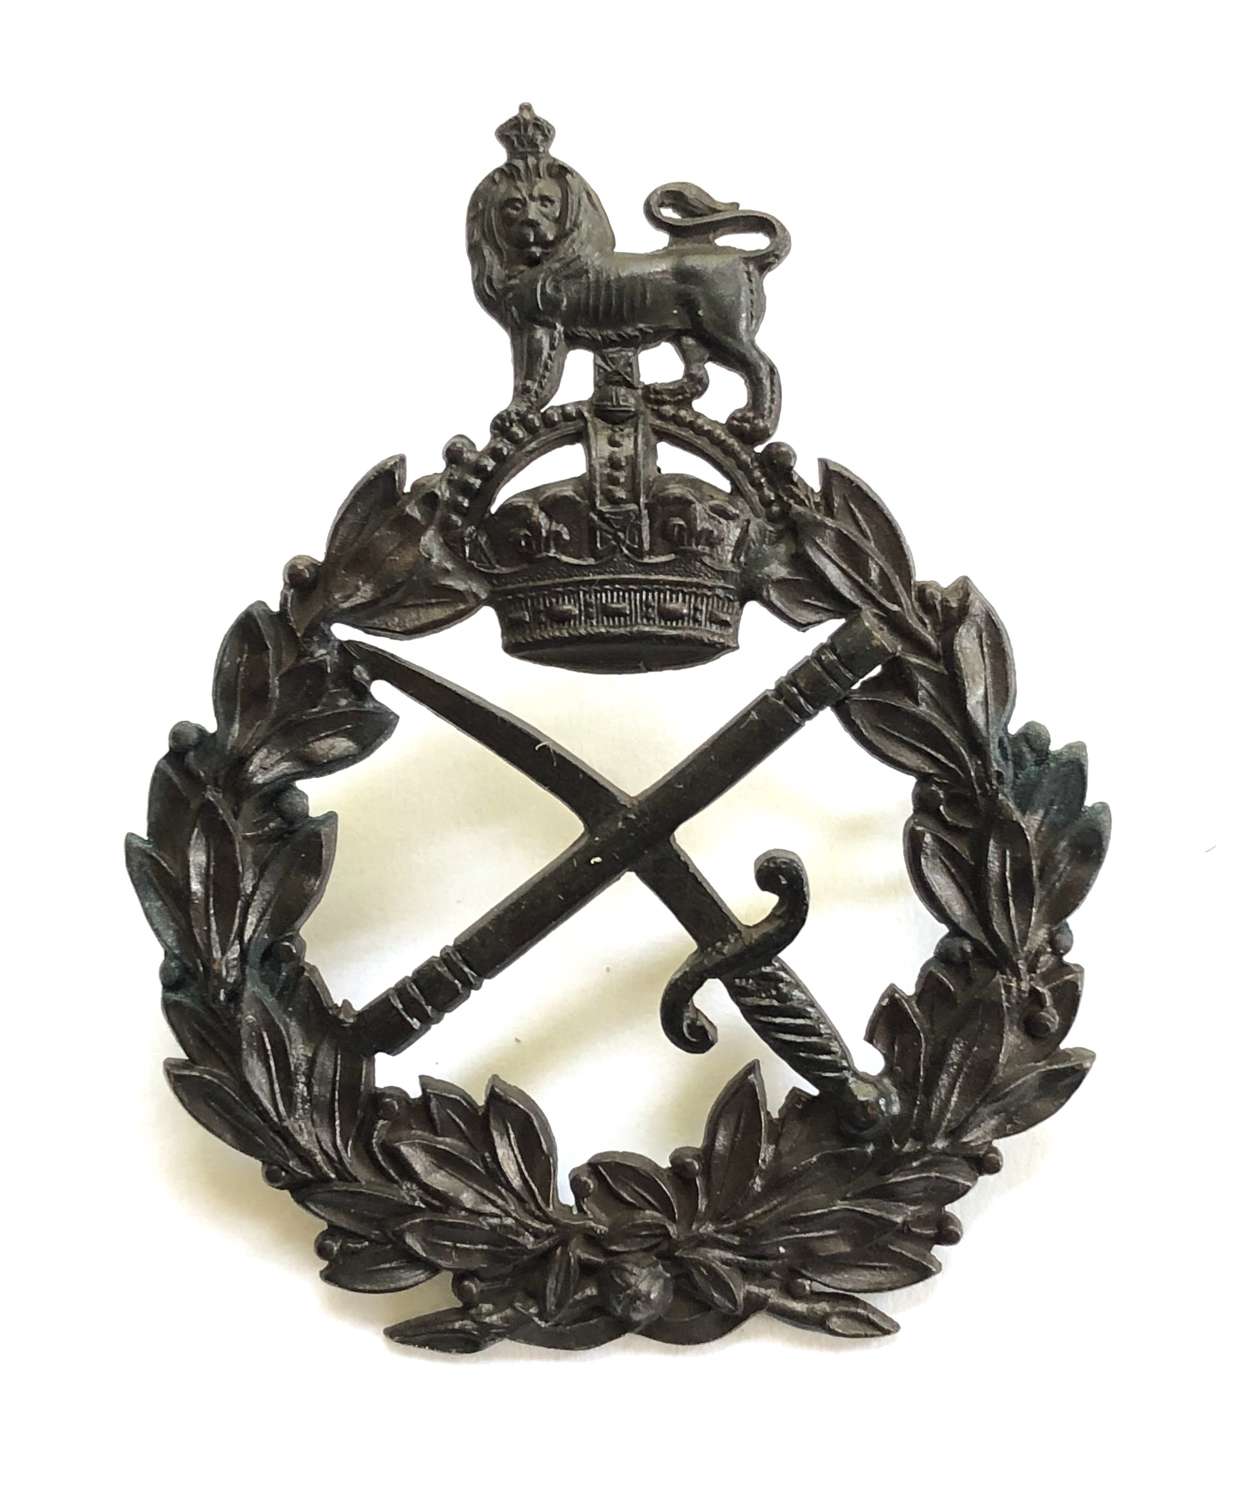 General Officer’s post 1902 OSD cap badge